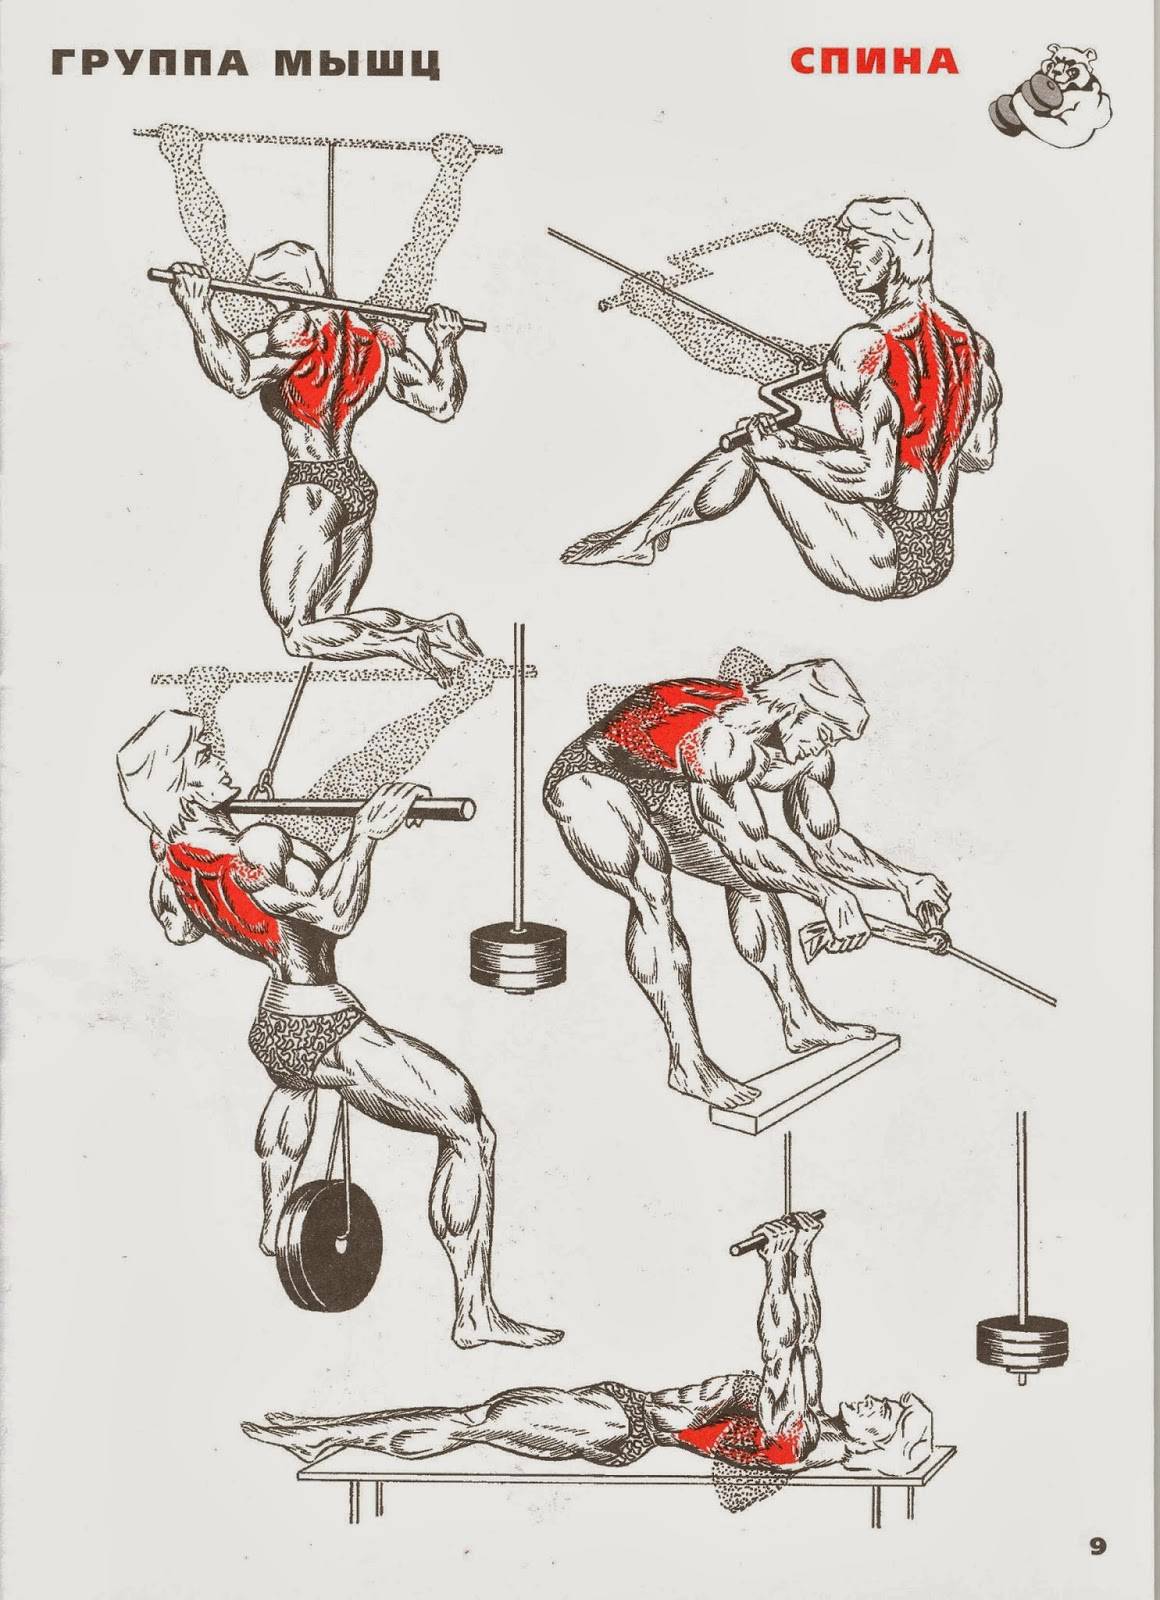 Как прокачать спину в домашних условиях. Упражнения для тренировки мышц спины в тренажерном зале. Упражнения для прокачки мышц спины. Базовые упражнения на спину в тренажерном зале. Упражнения на спину в тренажерном зале для мужчин.